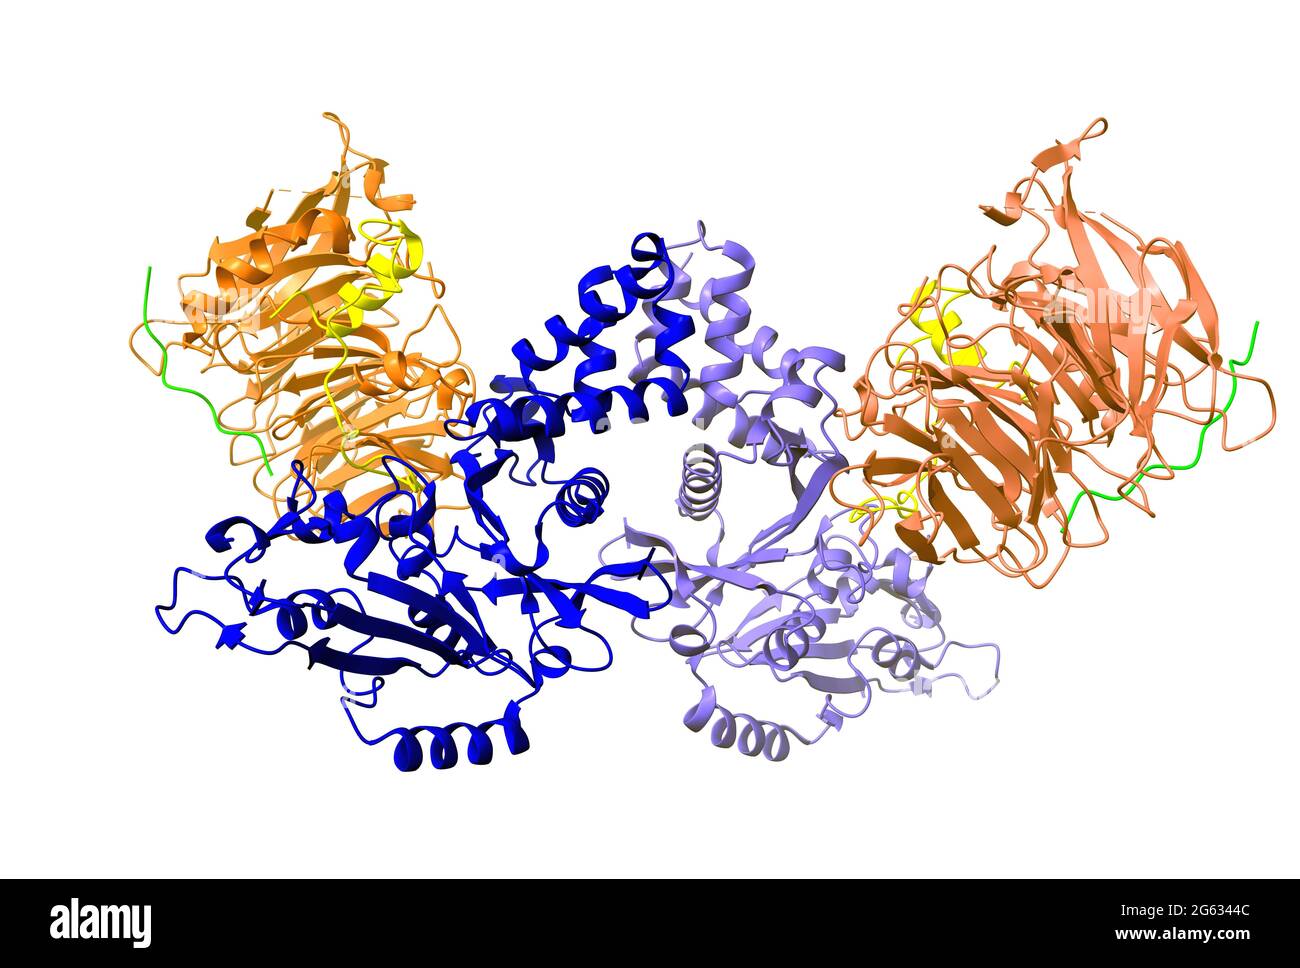 Kristallstruktur des Histon-Acetyltransferase-Komplexes; Histon H4 (gelb), Histon H3 (grün) abgebildet. 3D-Cartoon-Modell, weißer Hintergrund Stockfoto